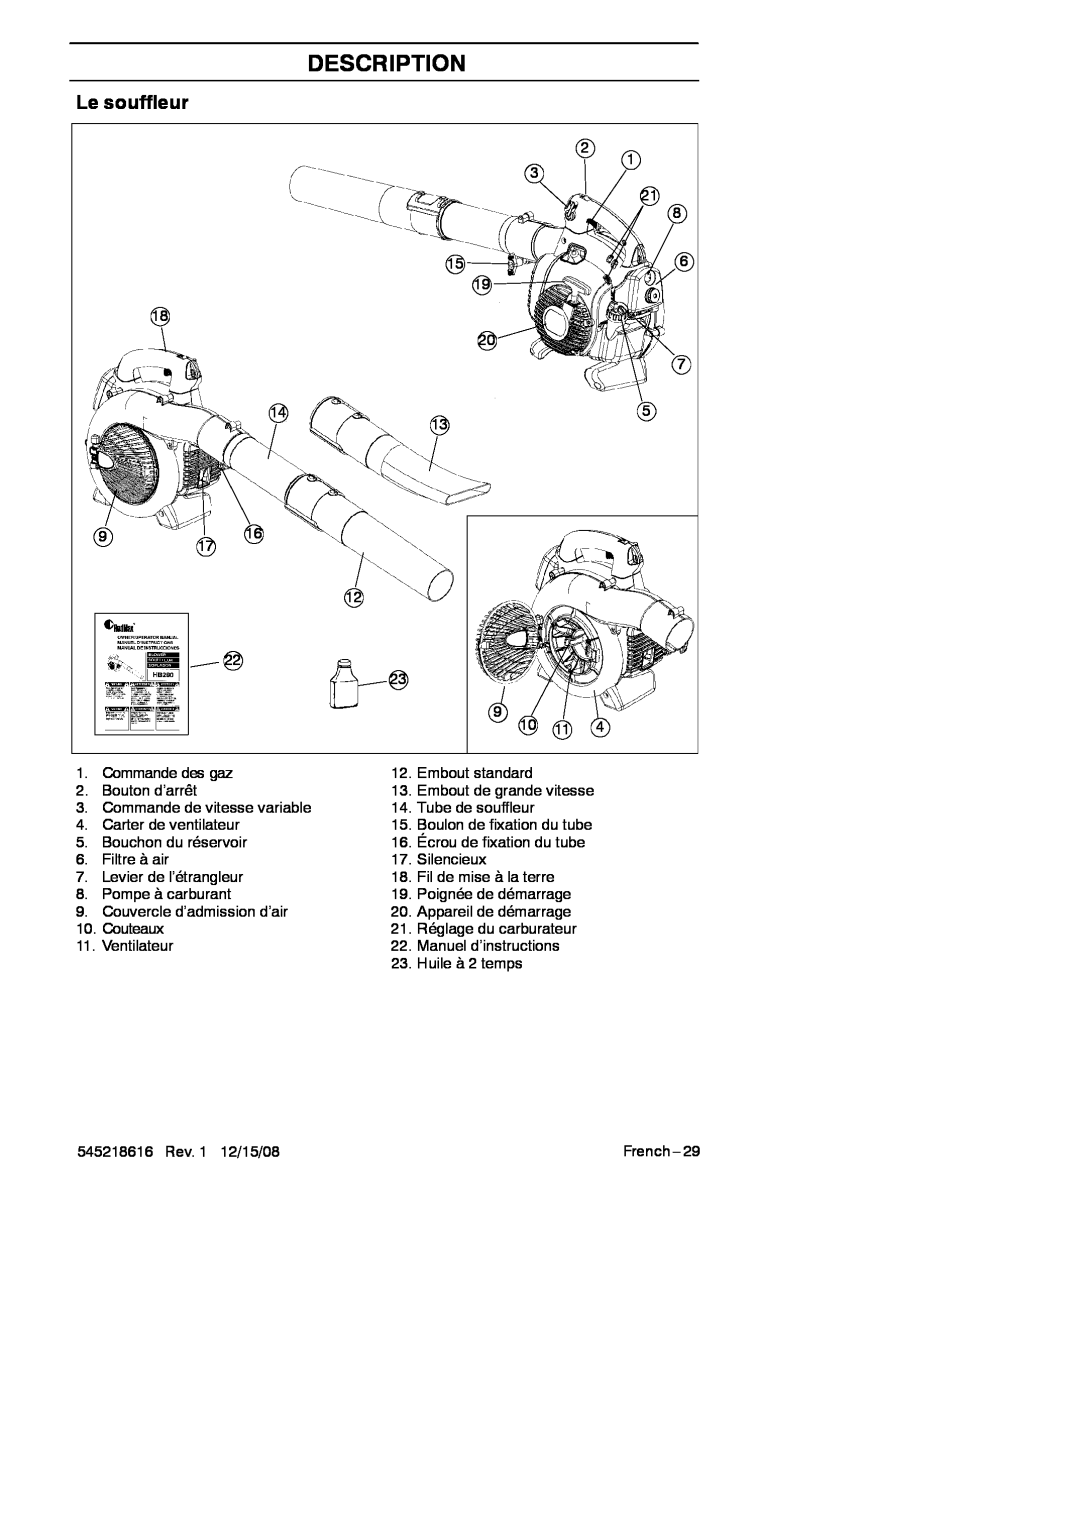 RedMax HB280 manual Le souffleur, Description 